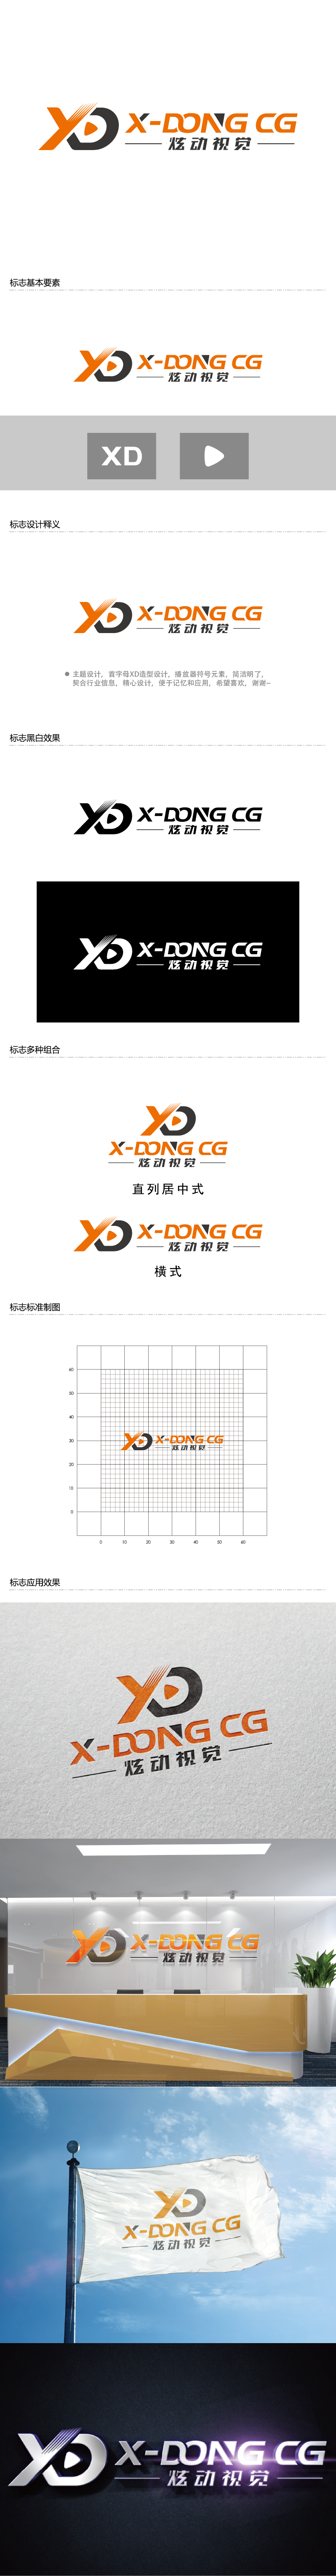 王涛的炫动视觉logo设计